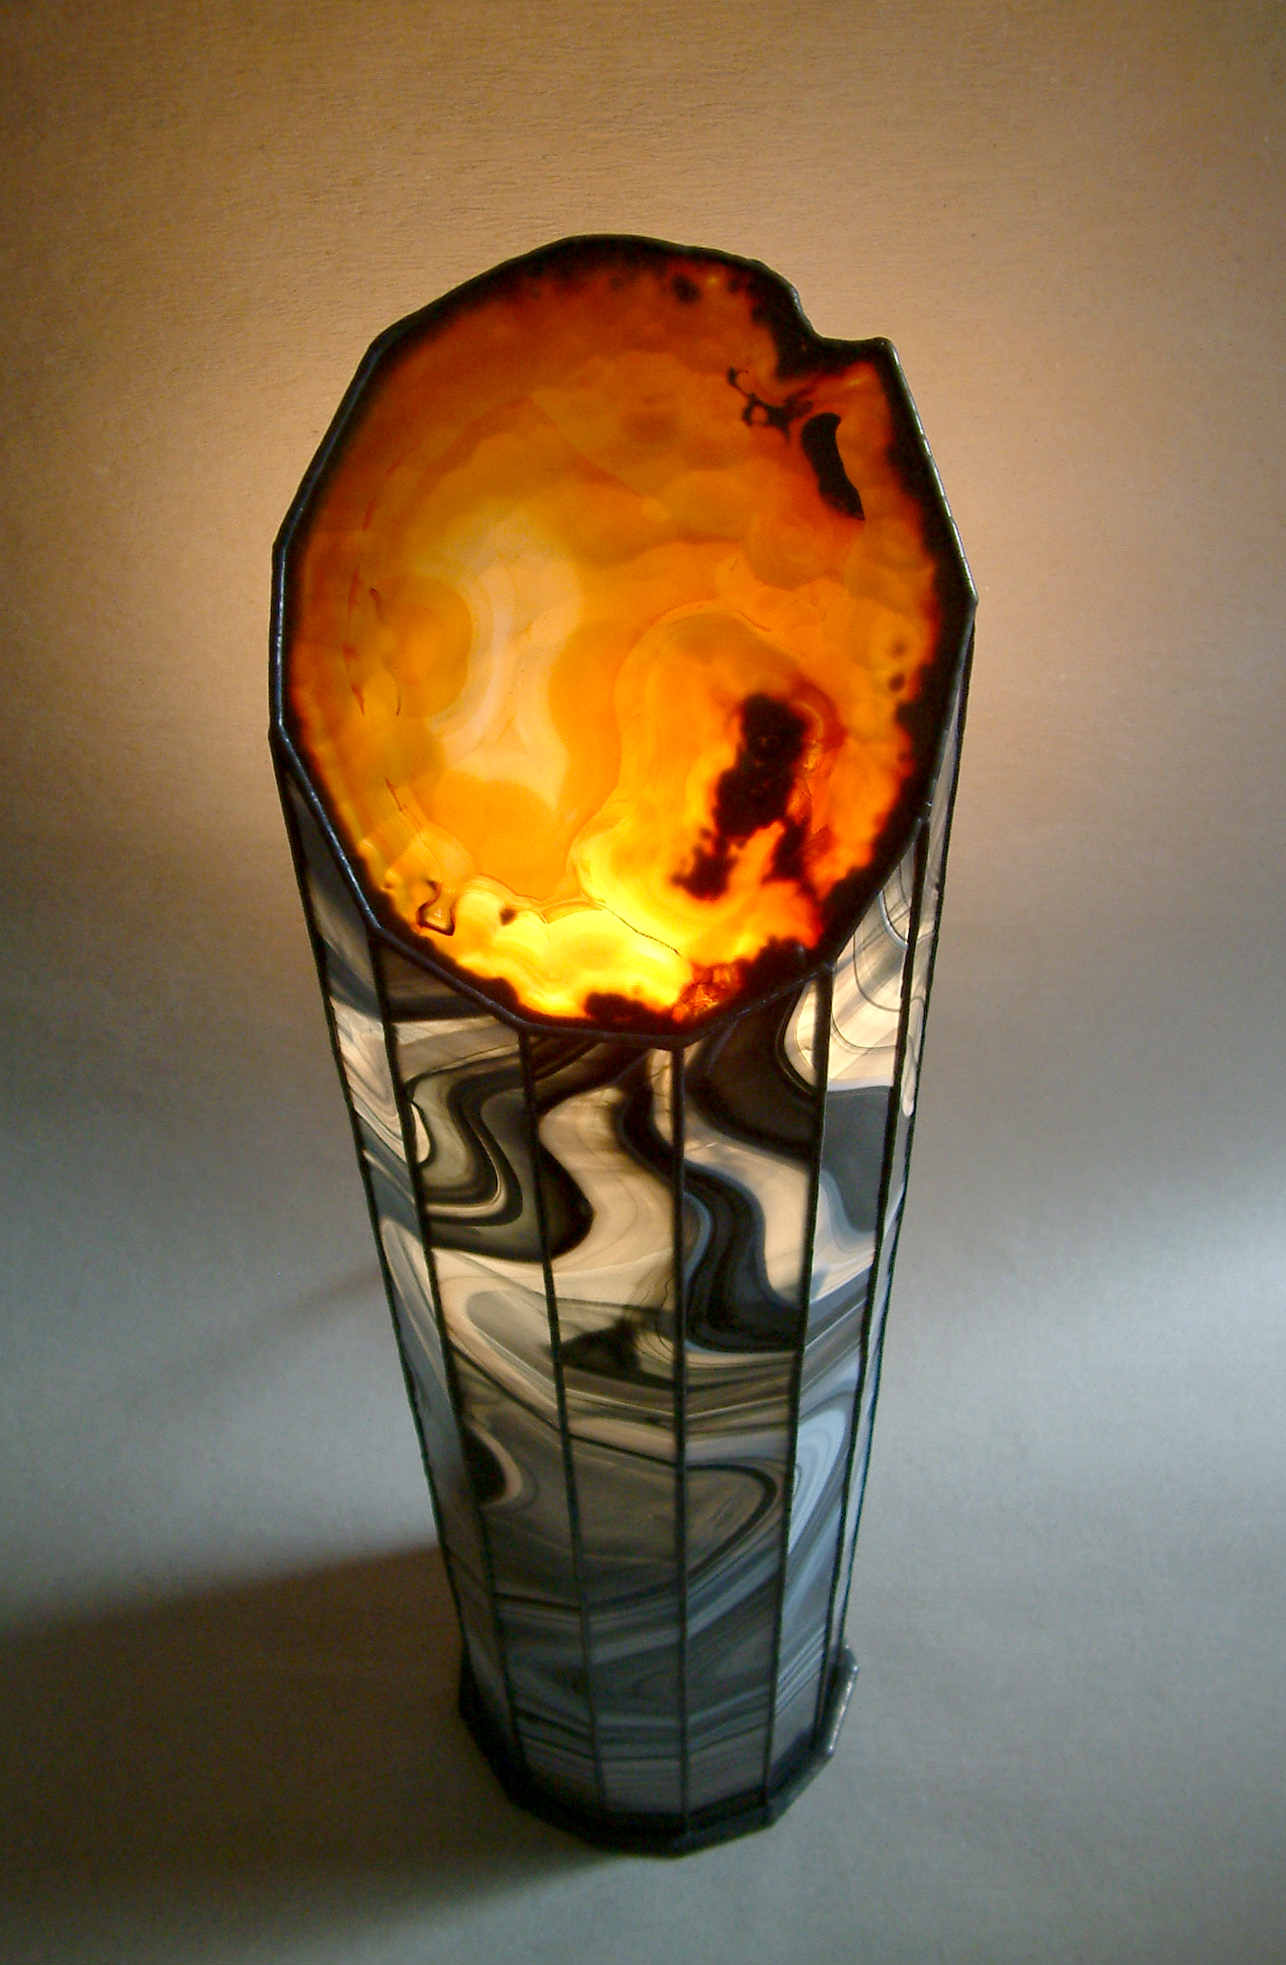 die leuchtende Hot Lava Lampe von schräg oben fotografiert